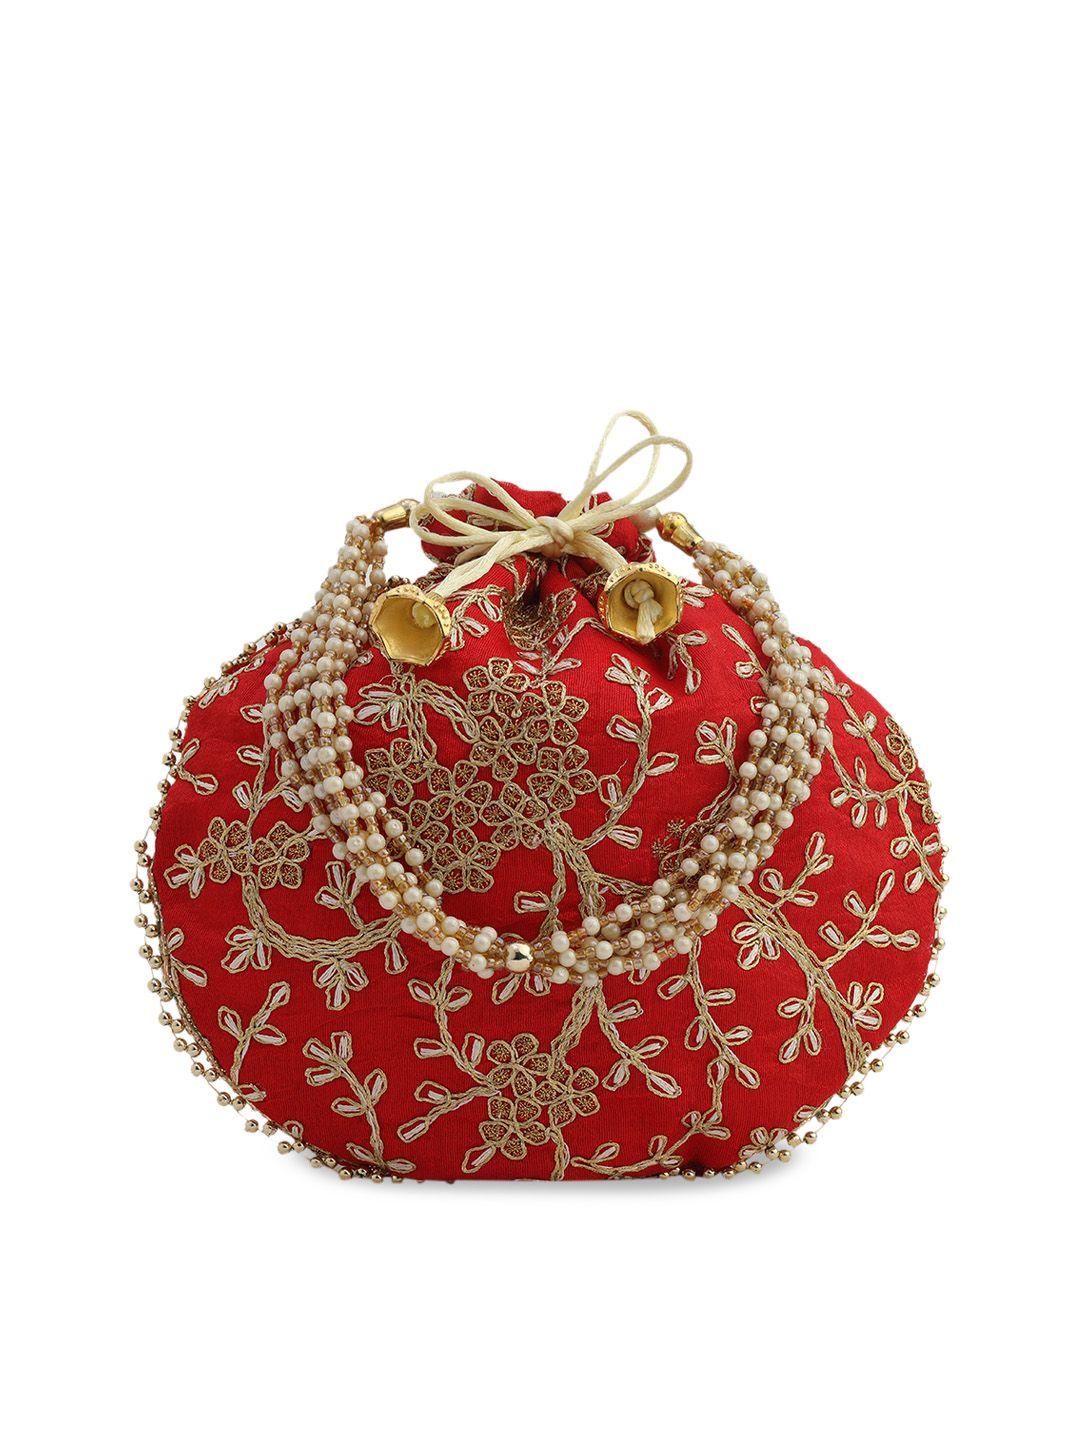 gaura pakhi women red & gold-toned embellished potli